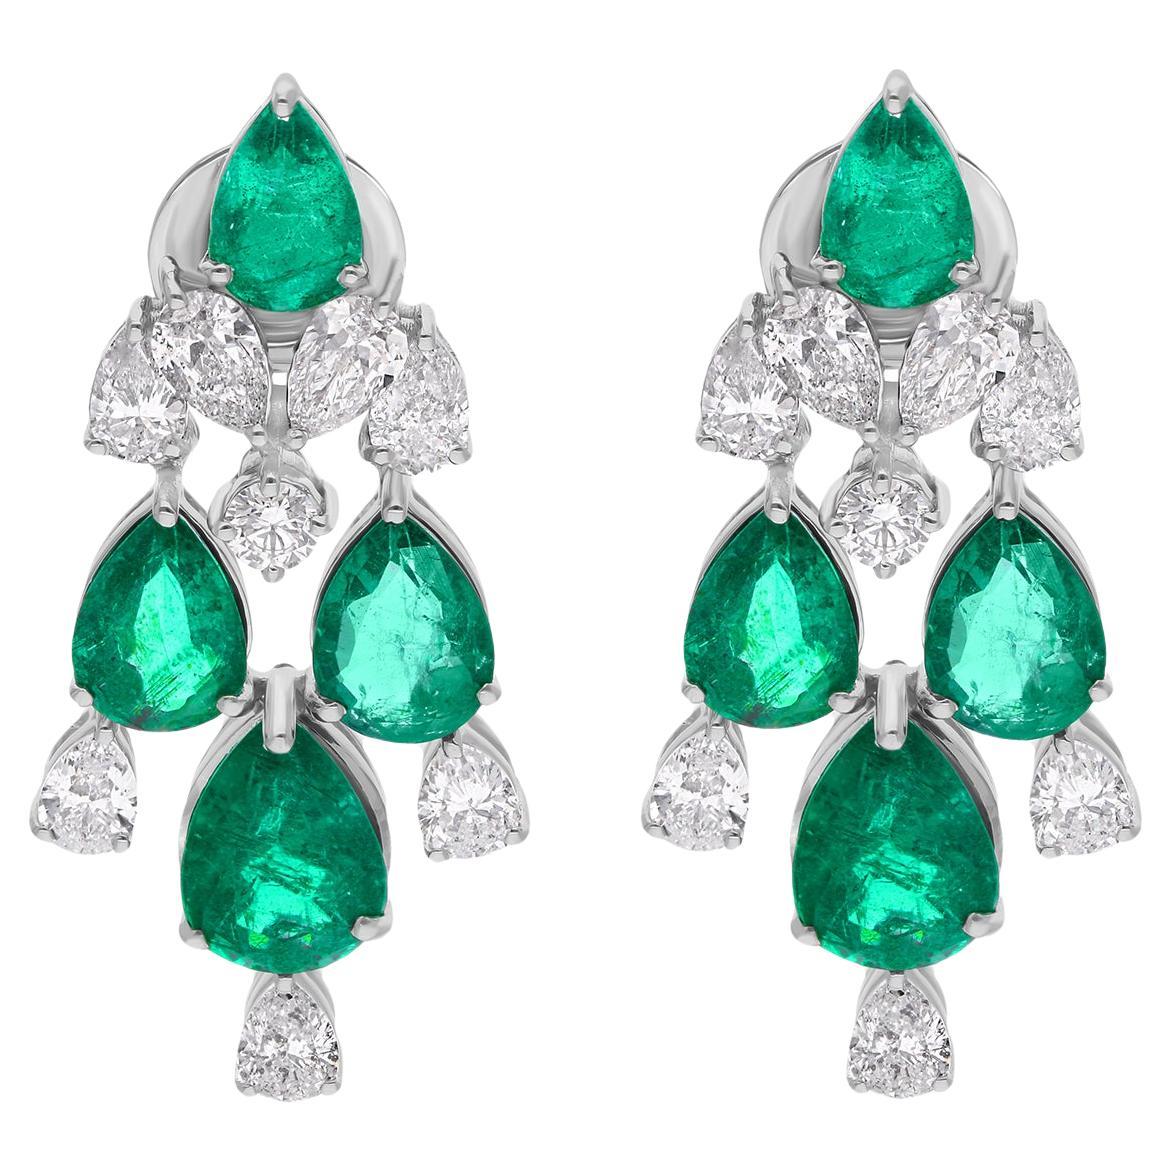 Real Zambian Emerald Gemstone Earrings Diamond 18 Karat White Gold Fine Jewelry For Sale